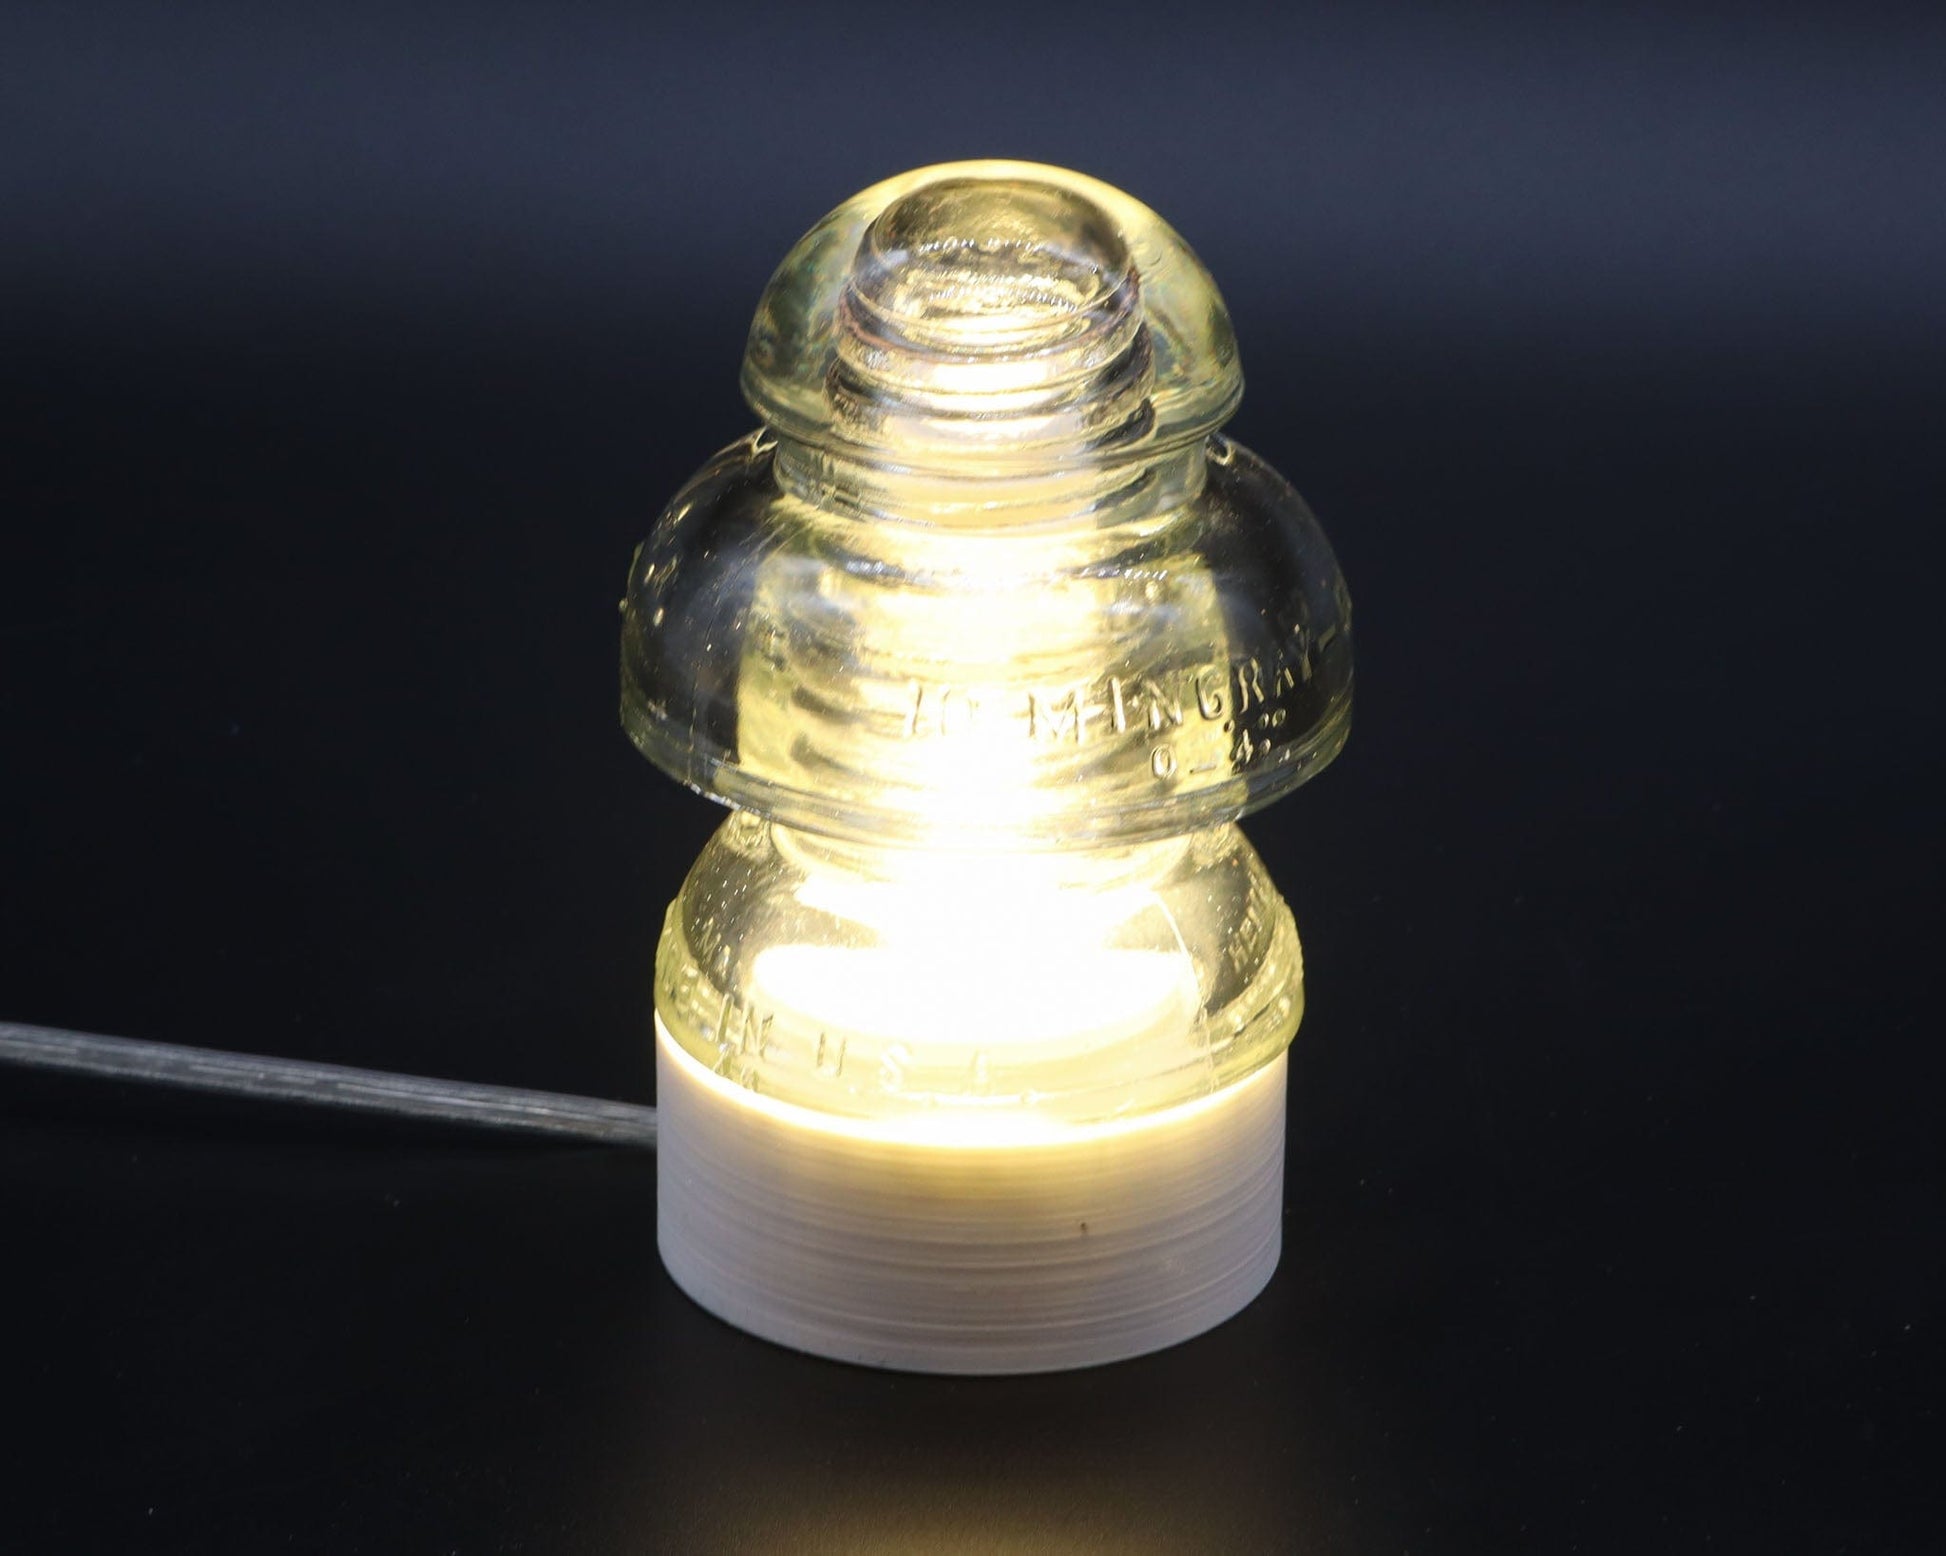 LightAndTimeArt Lamp base Lamp Base for Hemingray-50 Glass Insulators